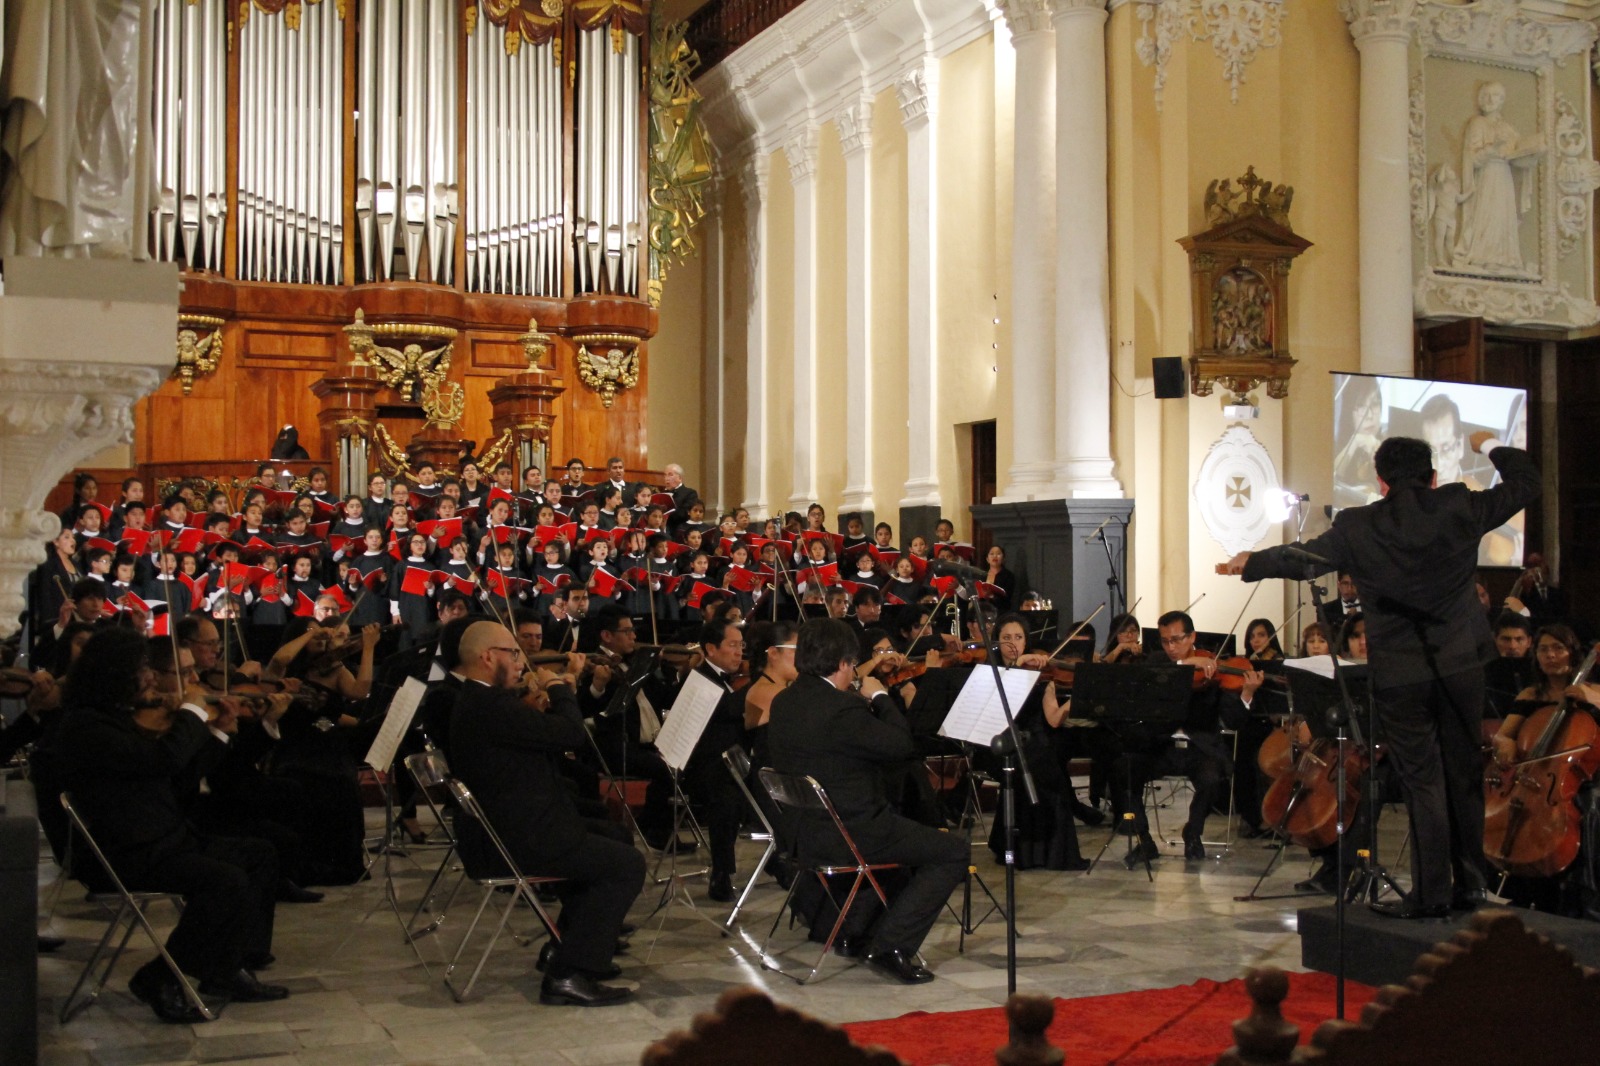 Concierto gratuito de Música Sacra en la basílica catedral se realizará este 1 de junio